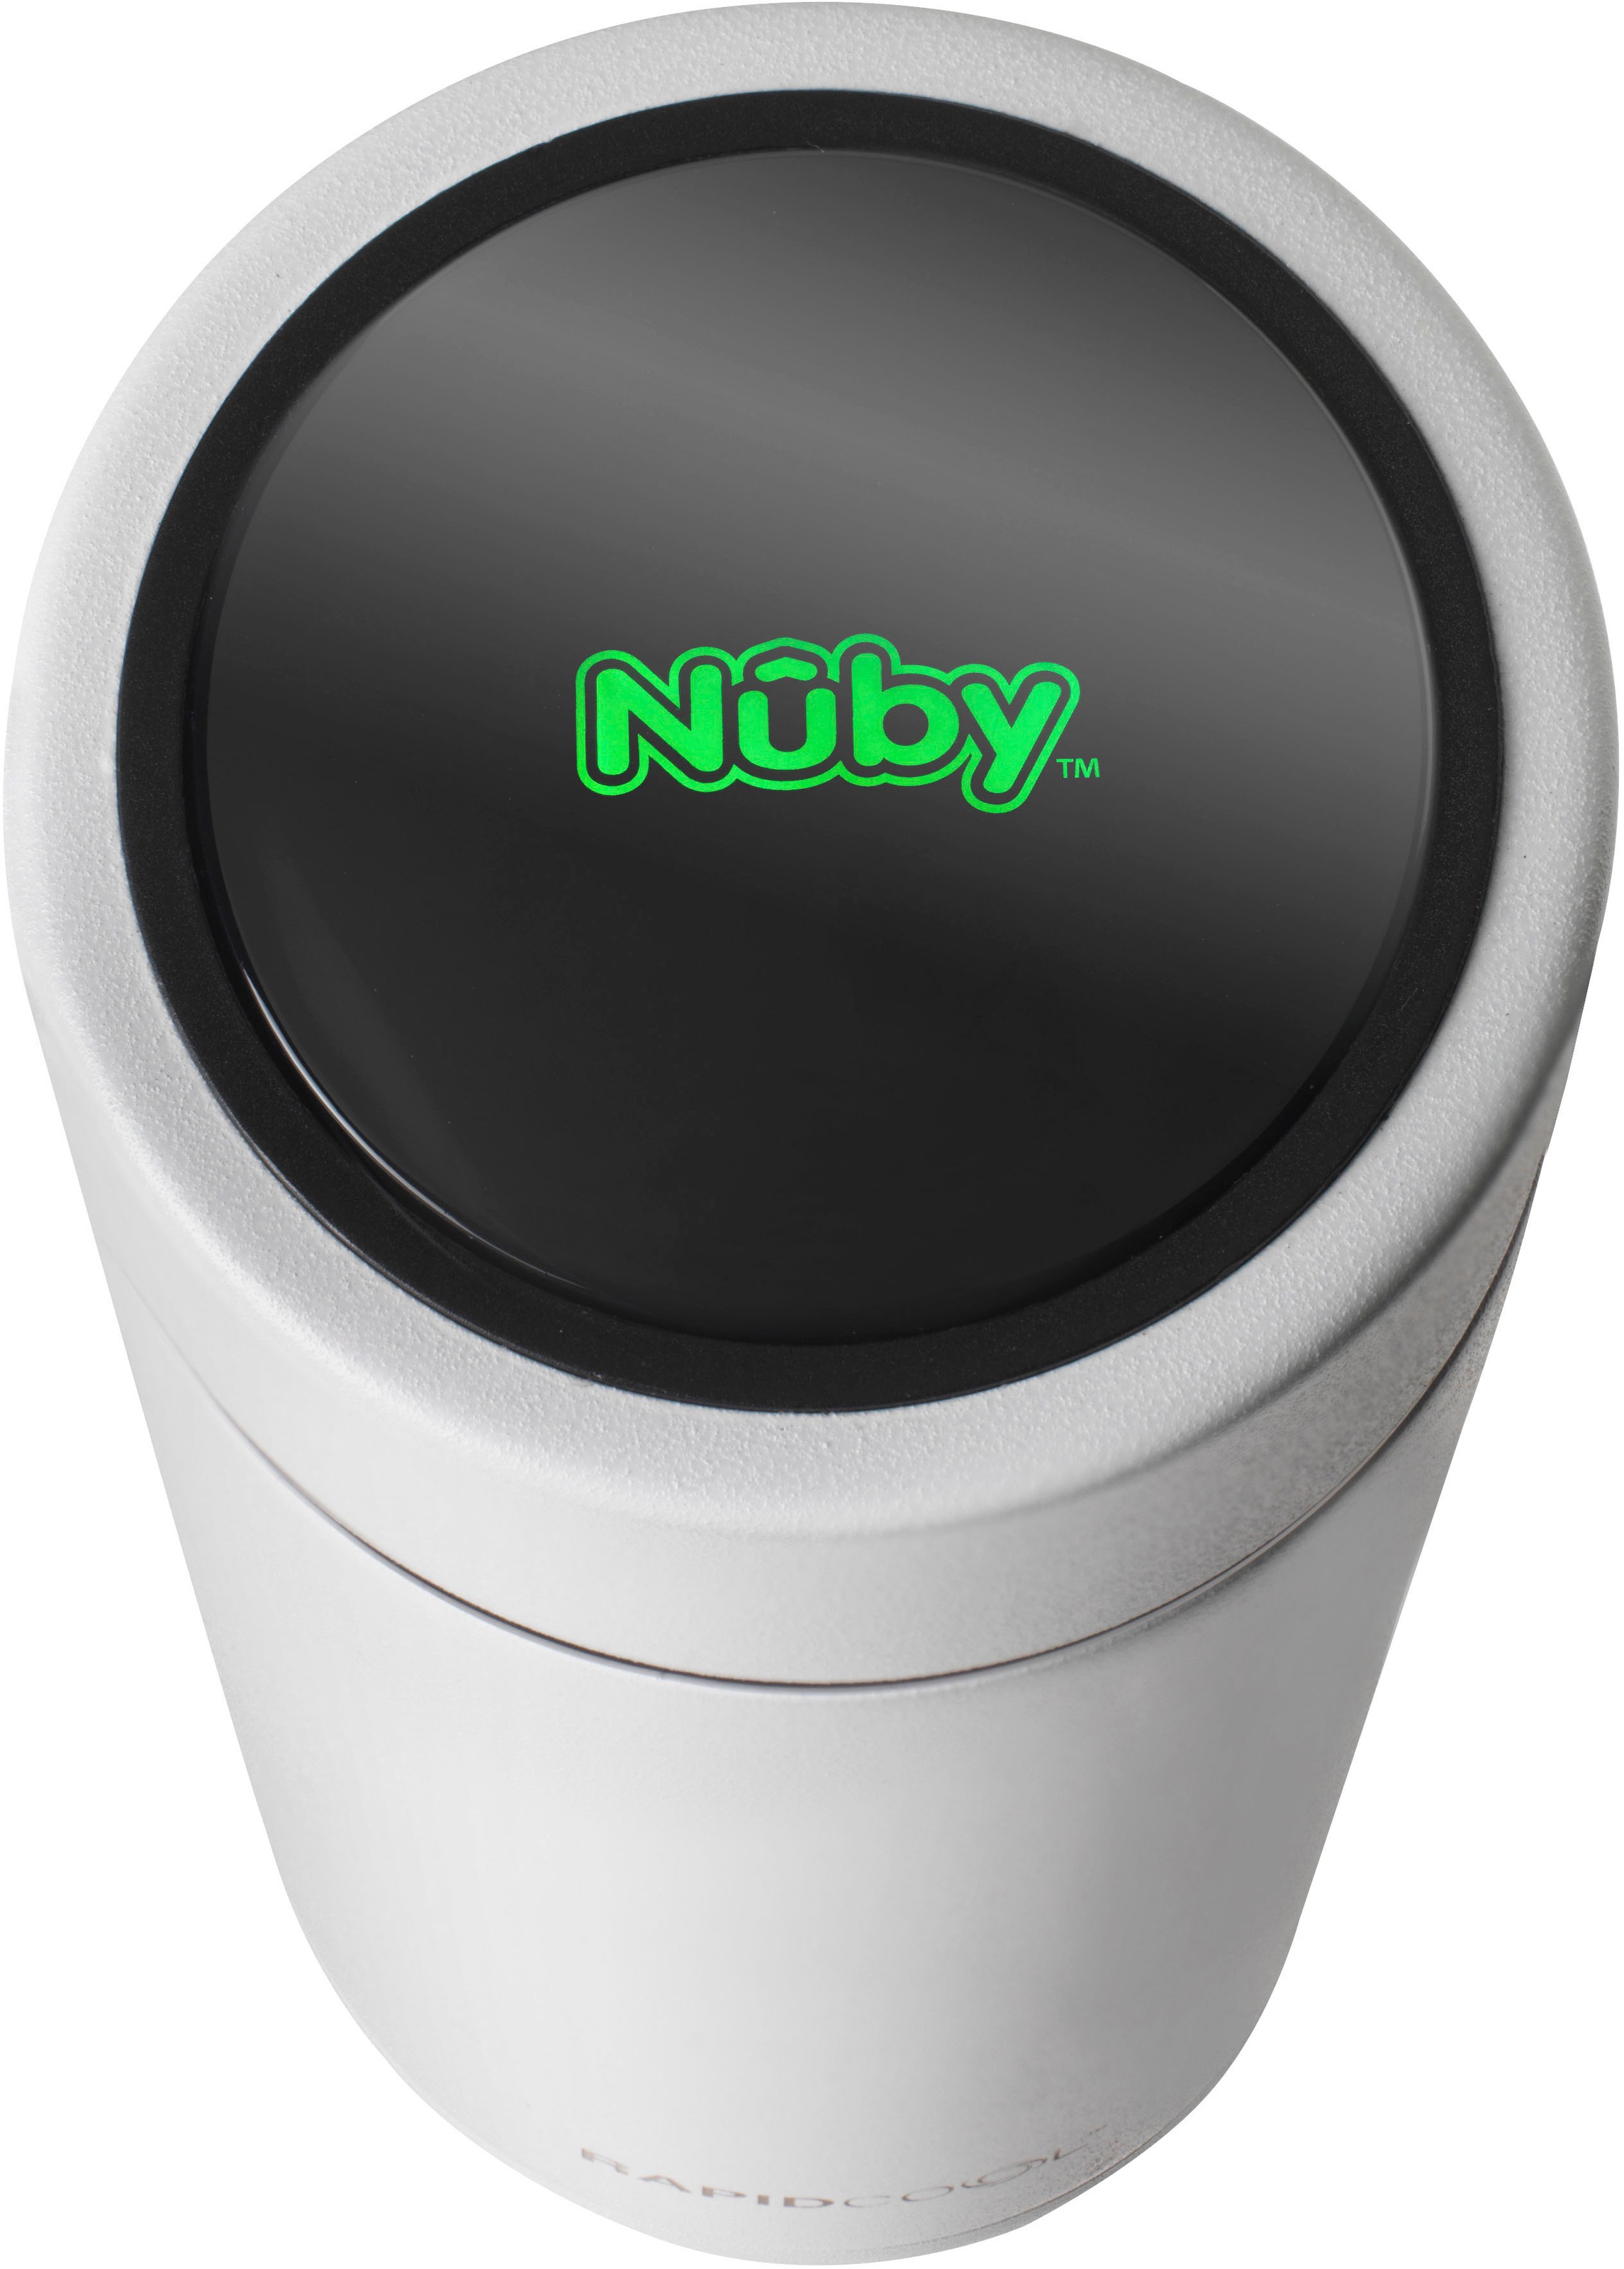 Nuby Thermobehälter »RapidCool«, (1 tlg.), zur Fläschchenzubereitung